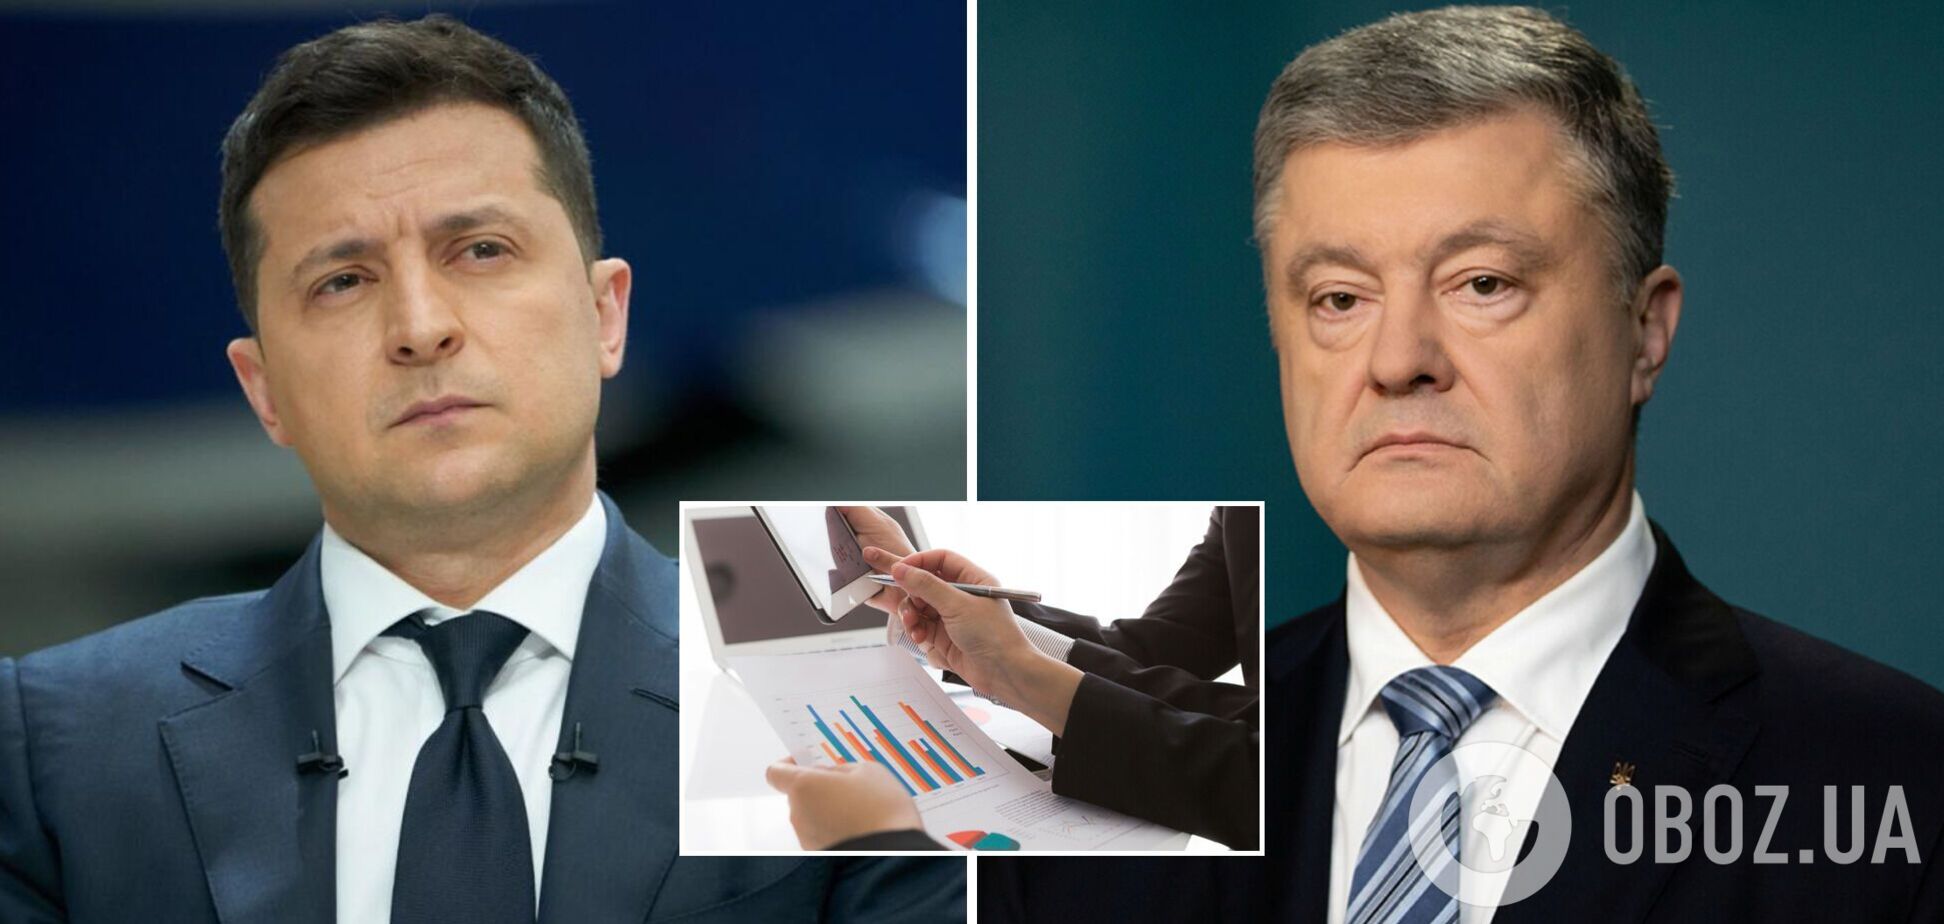 У президентських рейтингах визначились лідери – Зеленський і Порошенко